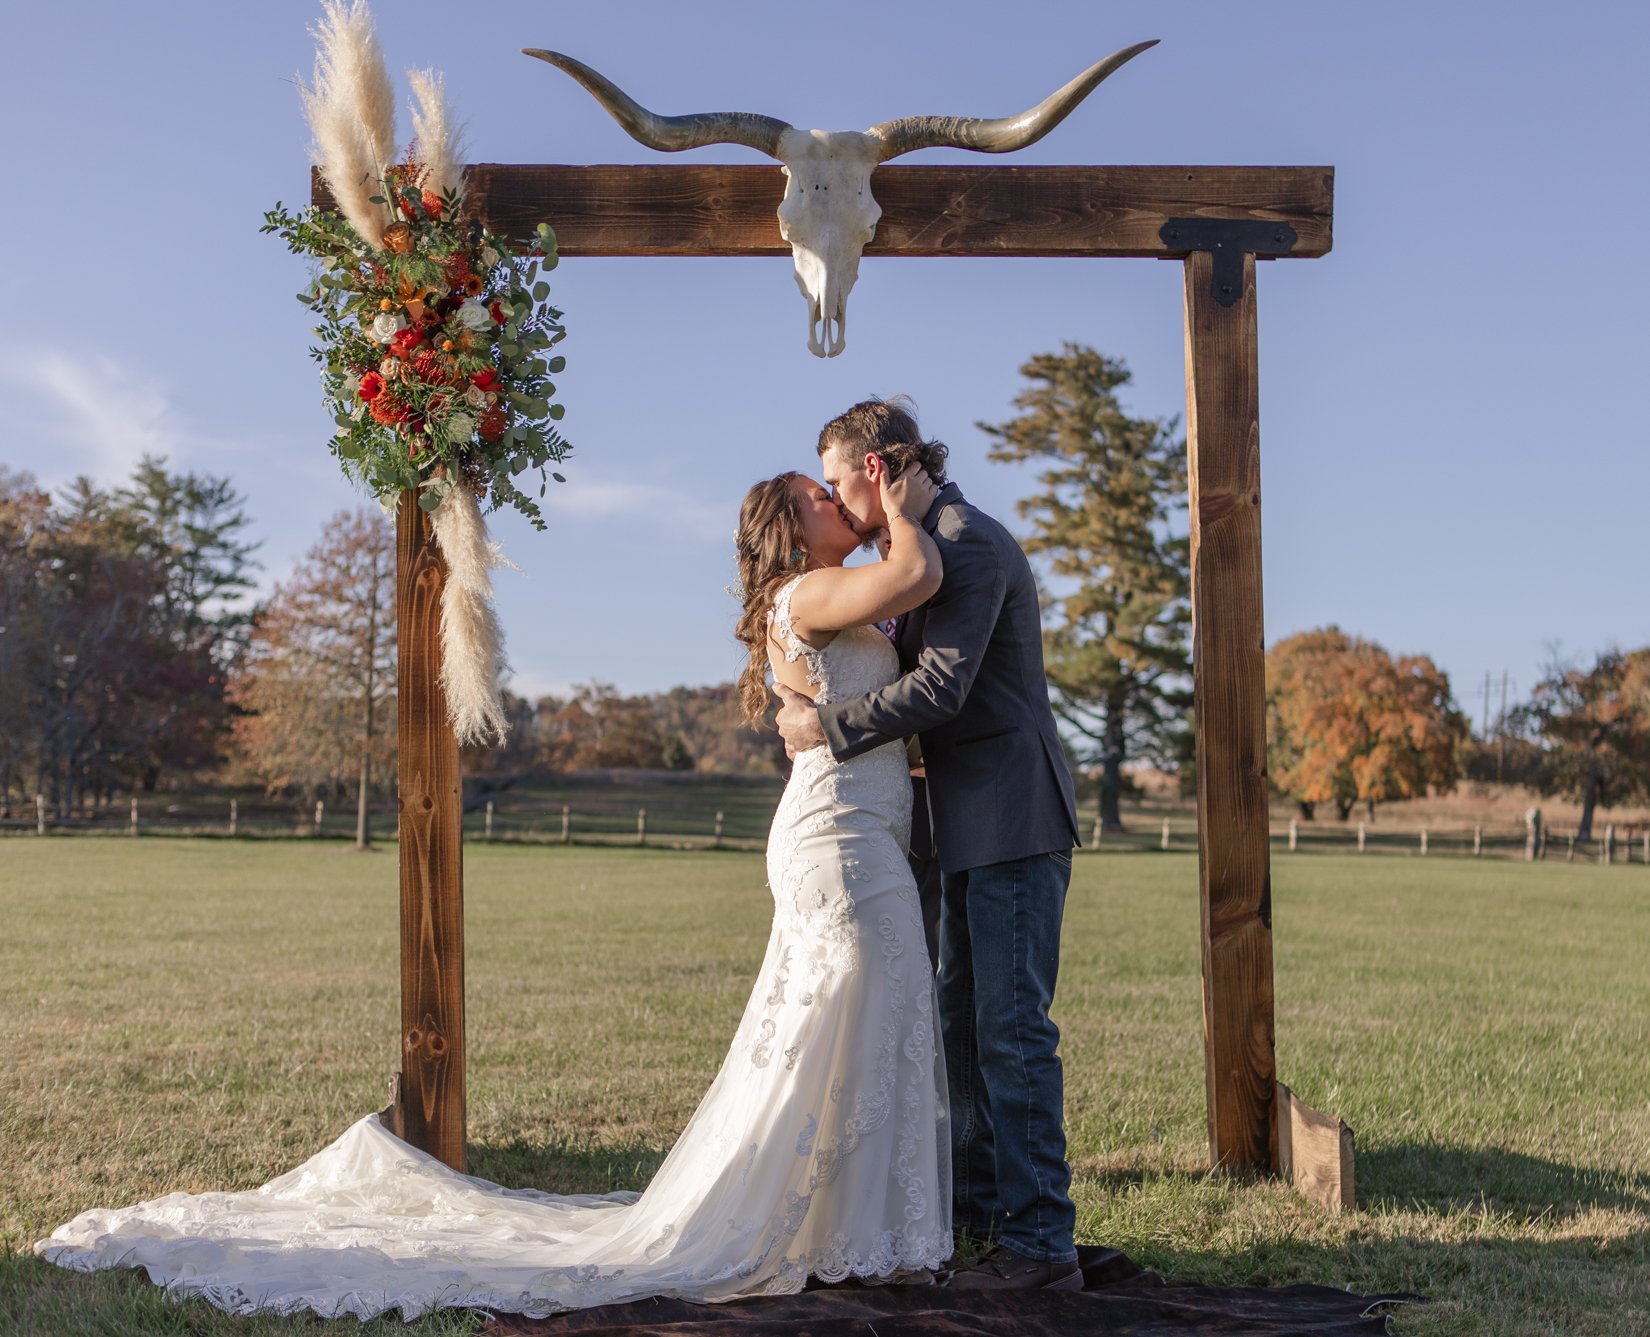 Tori and Hunter Wedding at Taylor Ranch Asheville NC- Photos by Studio Misha-99.jpg